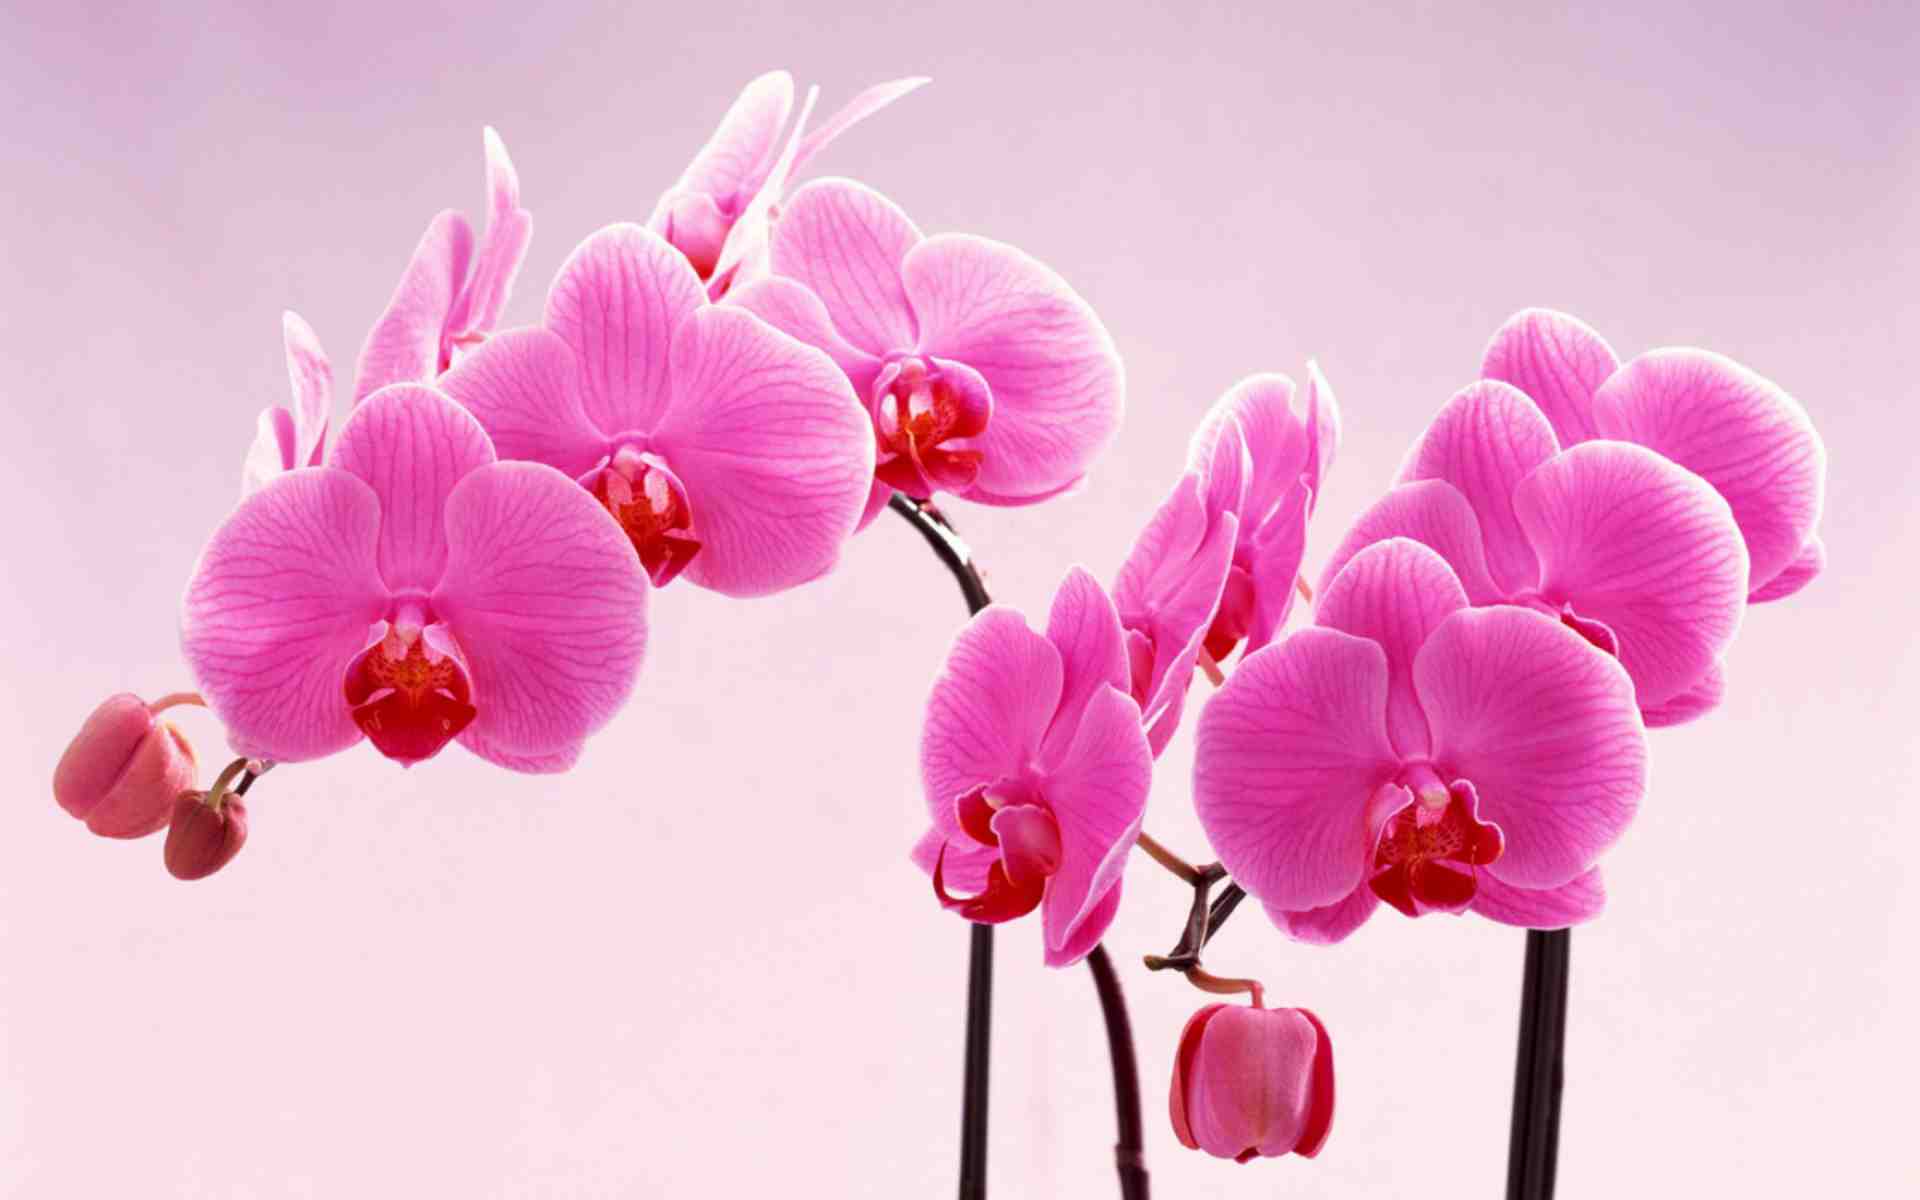 Hoa phong lan không chỉ là loài hoa đẹp mà nó còn mang ý nghĩa tinh túy và sự sang trọng. Hãy cùng chiêm ngưỡng những bông hoa phong lan tuyệt đẹp trong hình ảnh để cảm nhận được sự thanh tịnh và đẳng cấp của chúng.